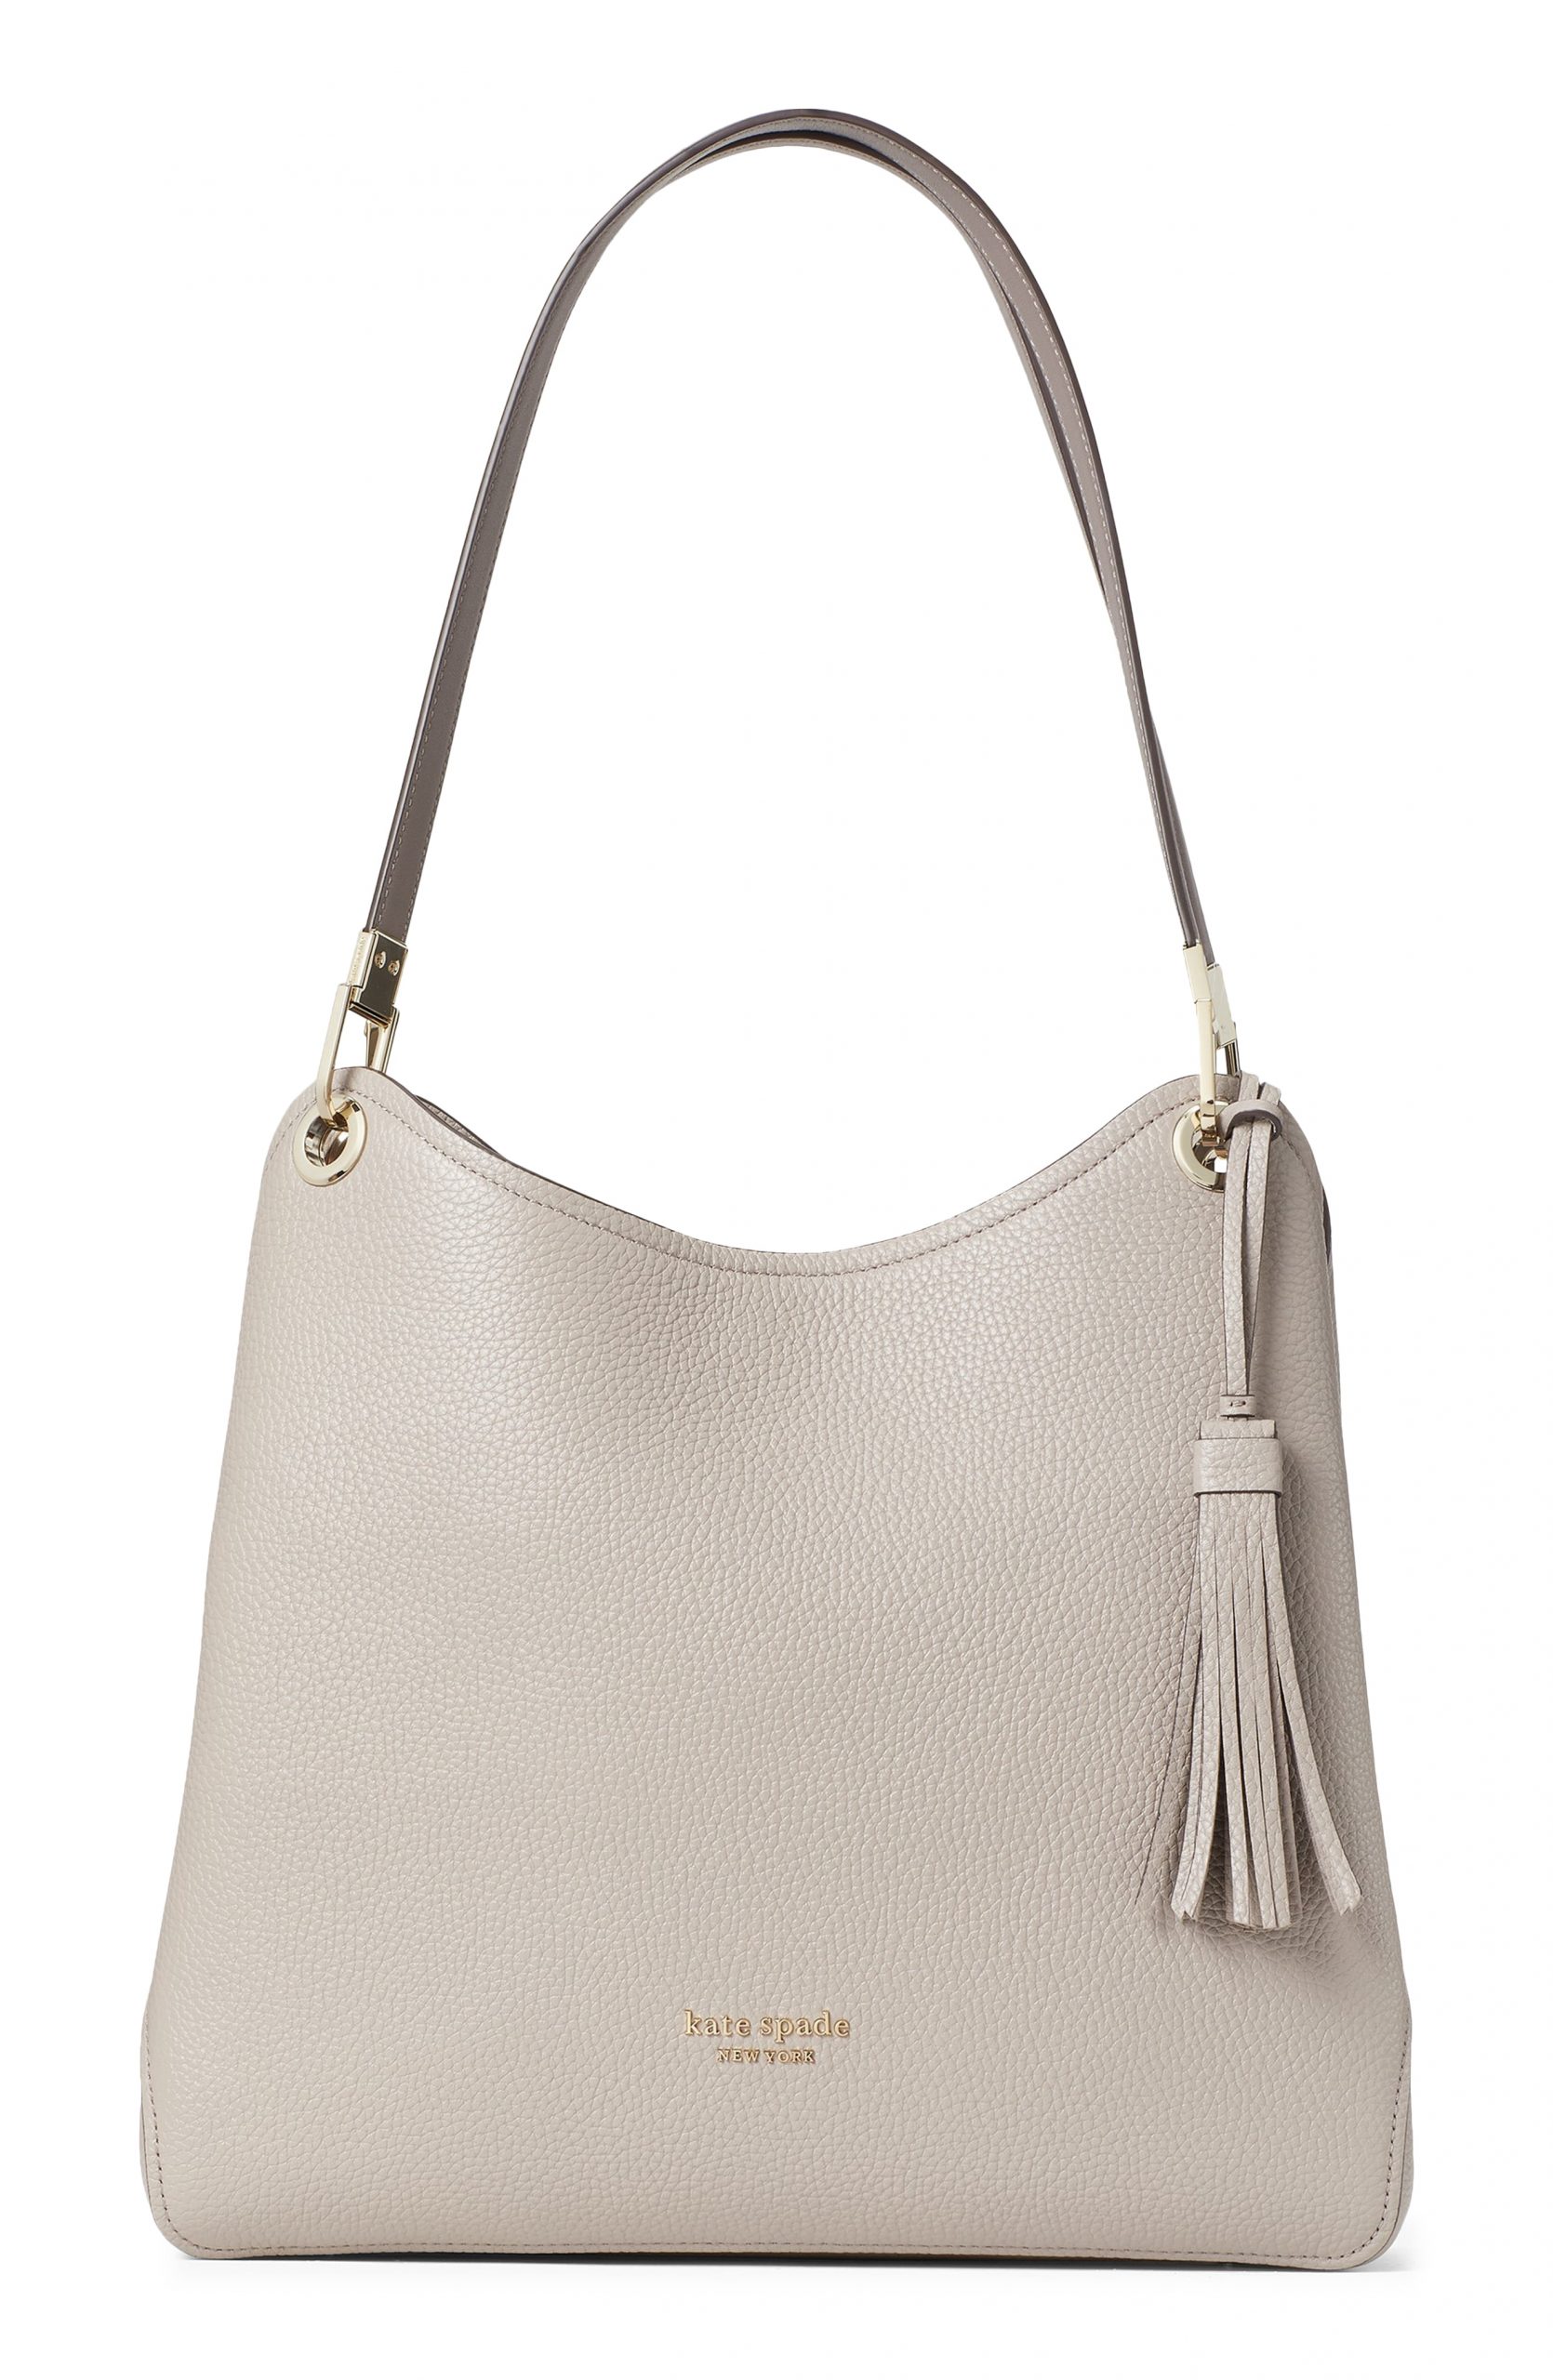 Kate Spade New York Large Loop Leather Shoulder Bag - Beige | Fashion ...